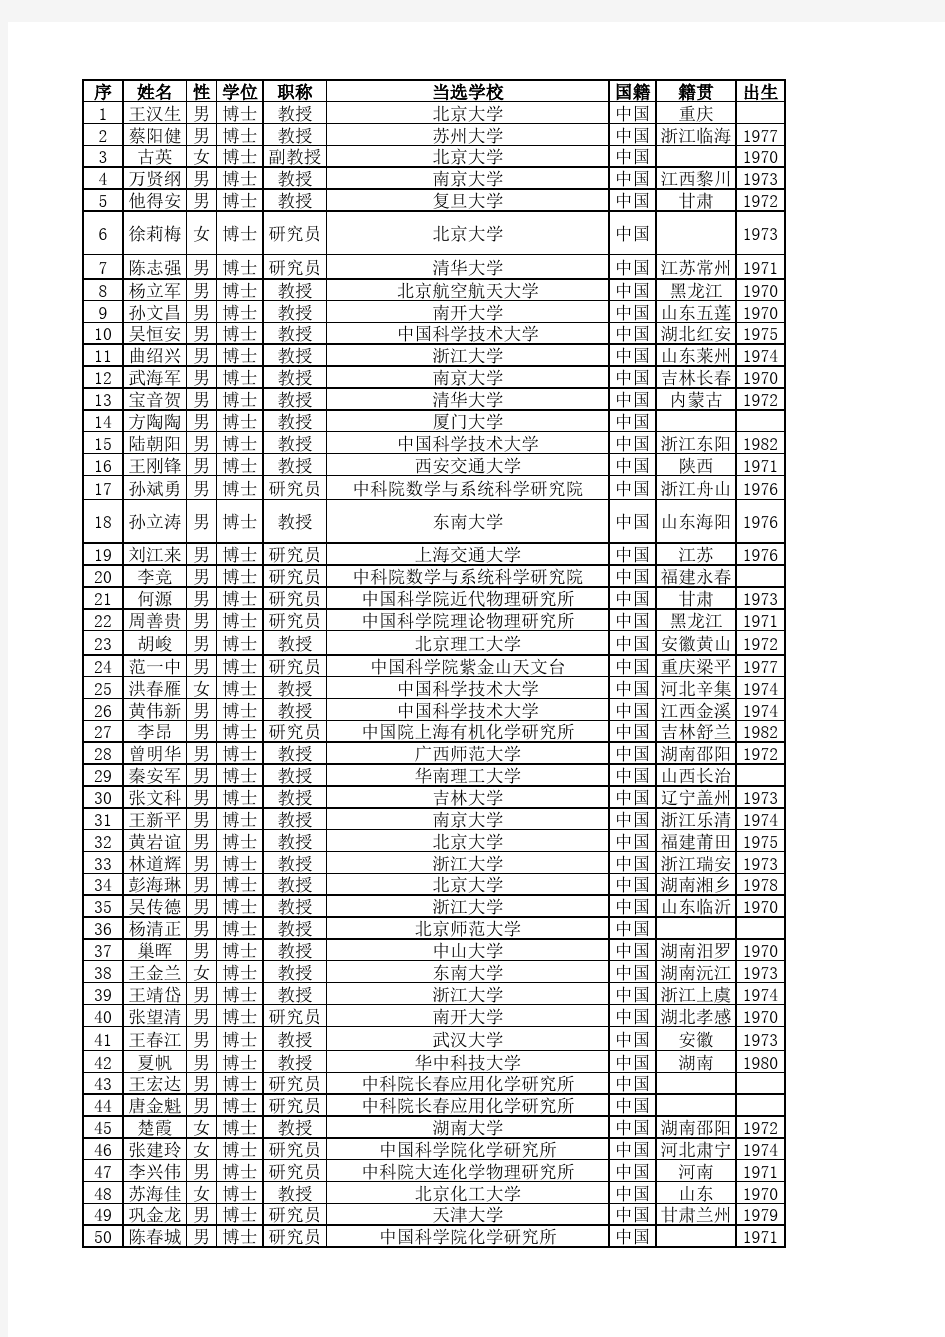 2015年杰青最终名单籍贯出生年和本科毕业学校